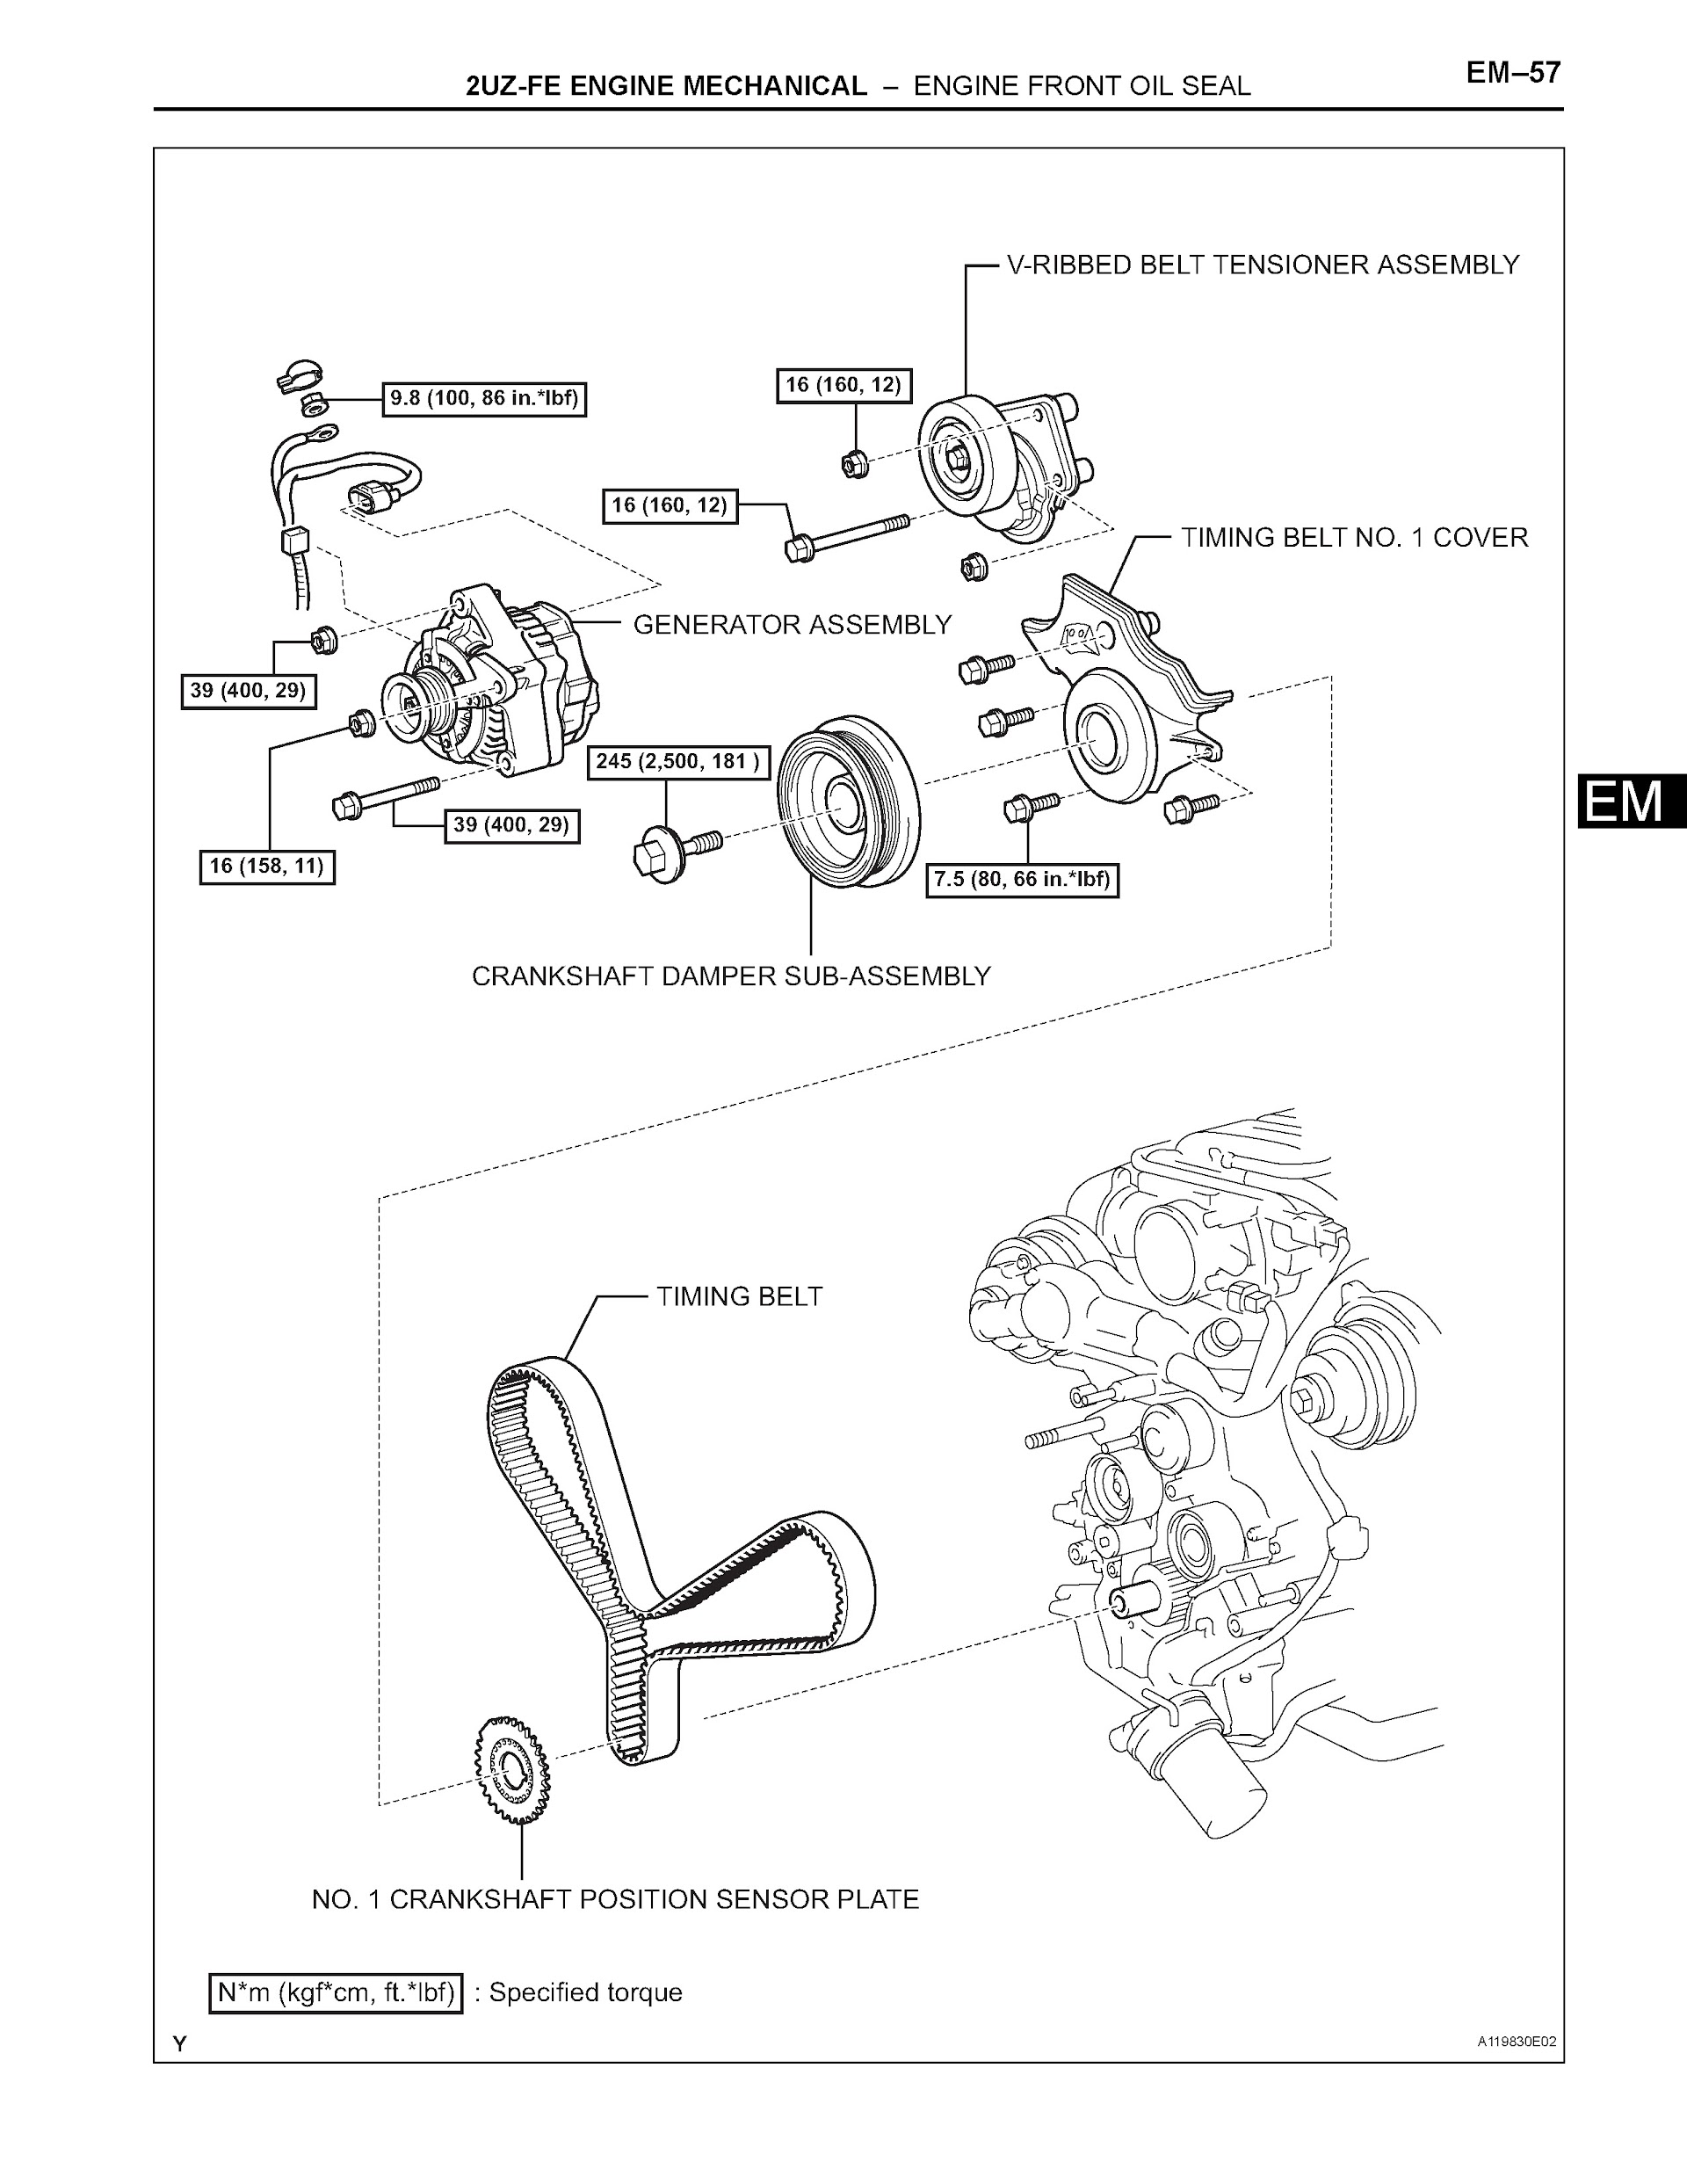 Toyota 4Runner Repair Manual, Engine Front Oil Seal